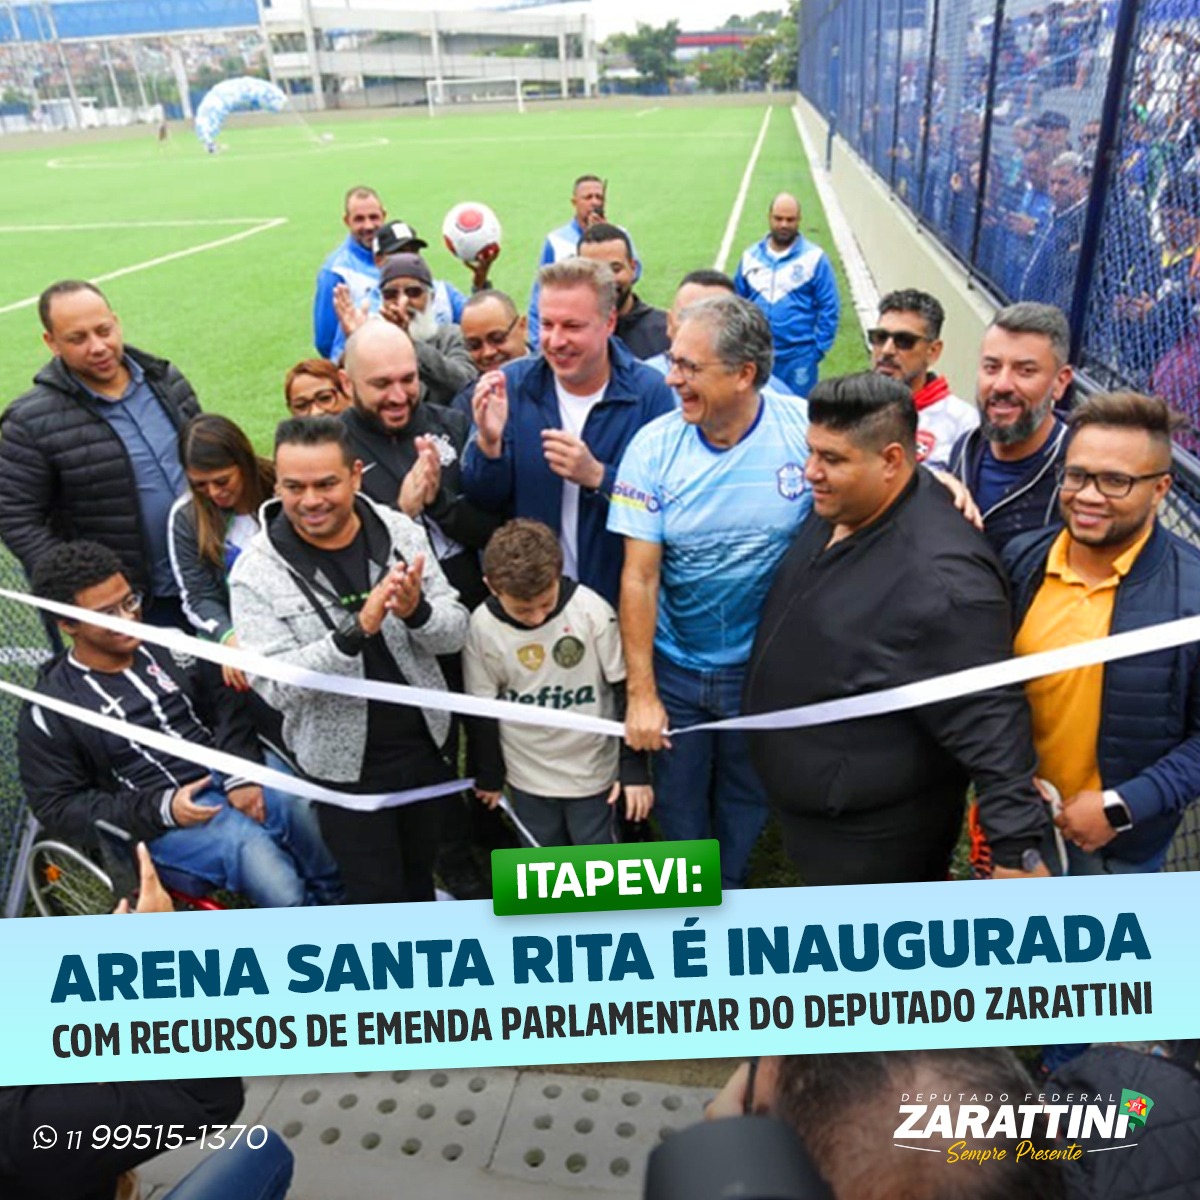 Arena esportiva construída com recursos enviados por Zarattini é inaugurada em Itapevi